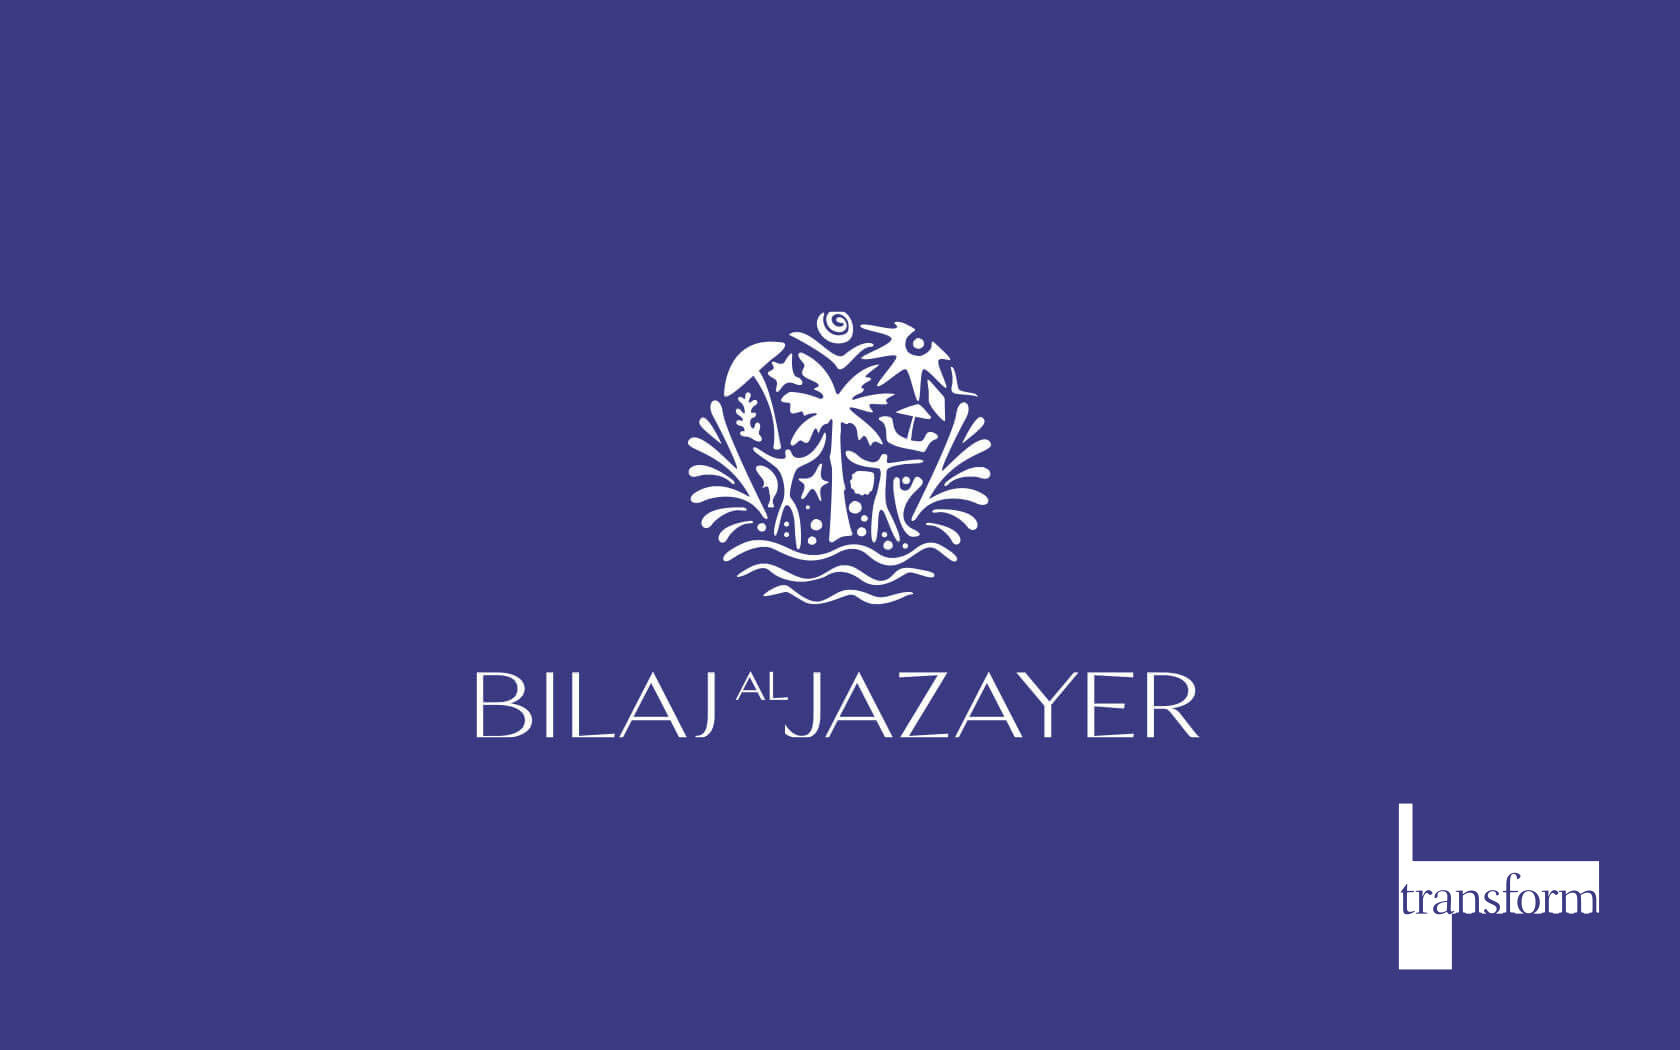 Bilaj logo in white